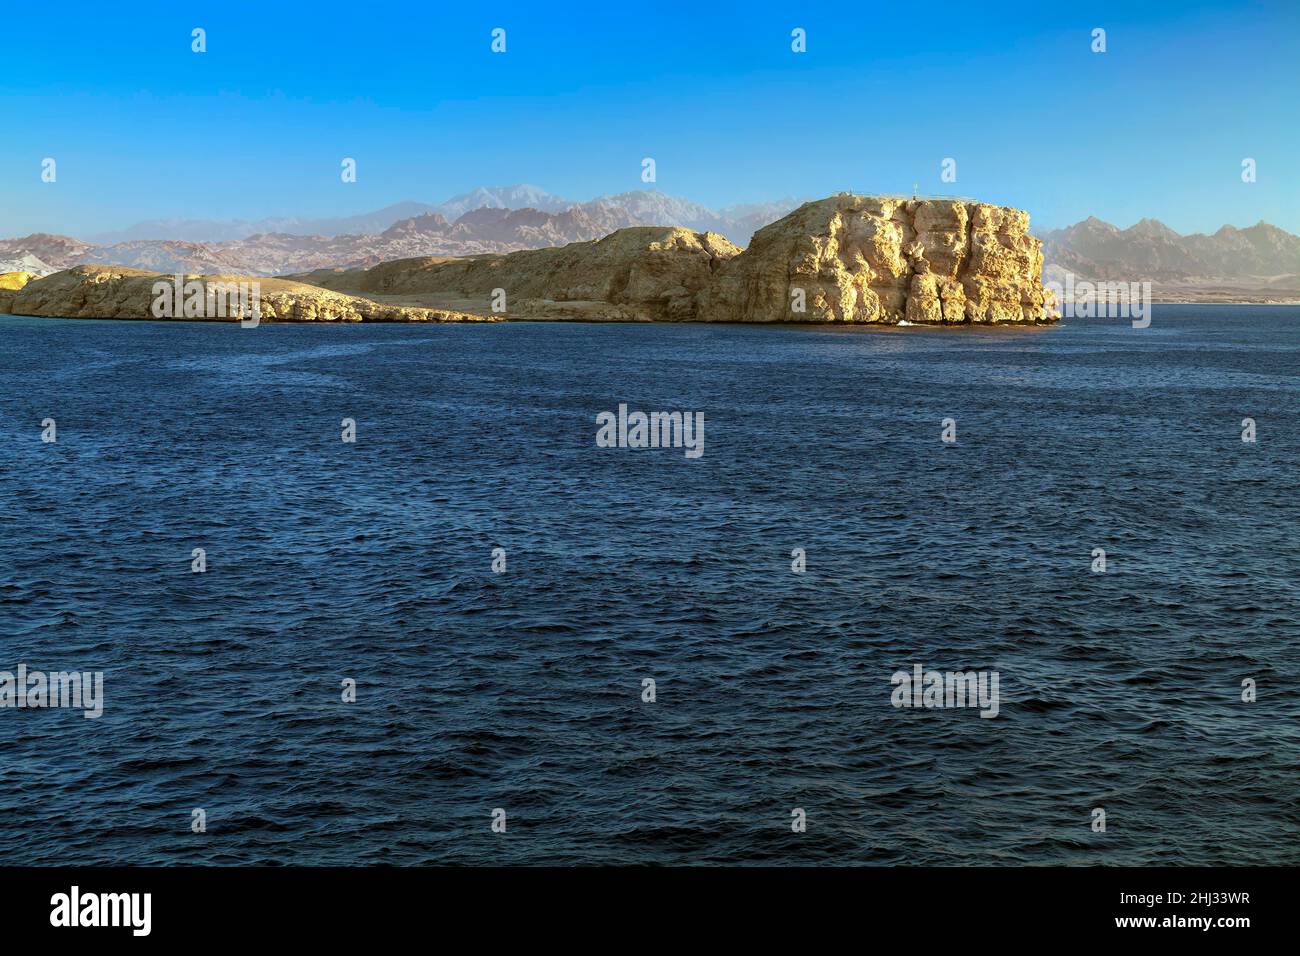 Punta meridionale della penisola del Sinai, sito di immersione dell'Osservatorio dello squalo, Parco Nazionale di Ras Muhammed, Sharm el Sheikh, Mar Rosso, Egitto Foto Stock